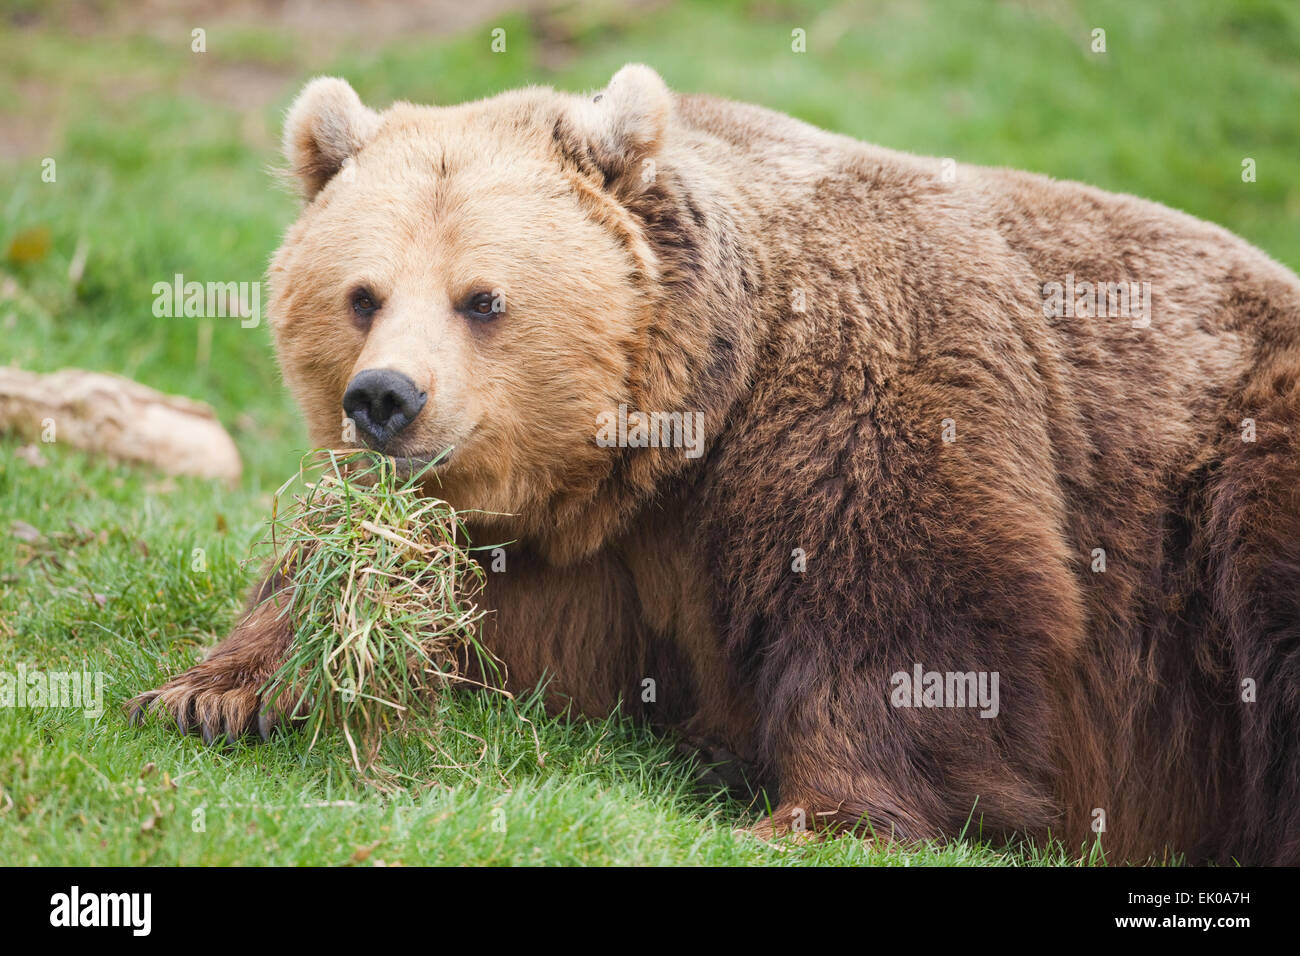 Europäischer Braunbär (Ursus Arctos Arctos). Allesfresser Natur des Tieres beschrieben als Fleischfresser gezeigt von Grass im Mund gehalten. Stockfoto